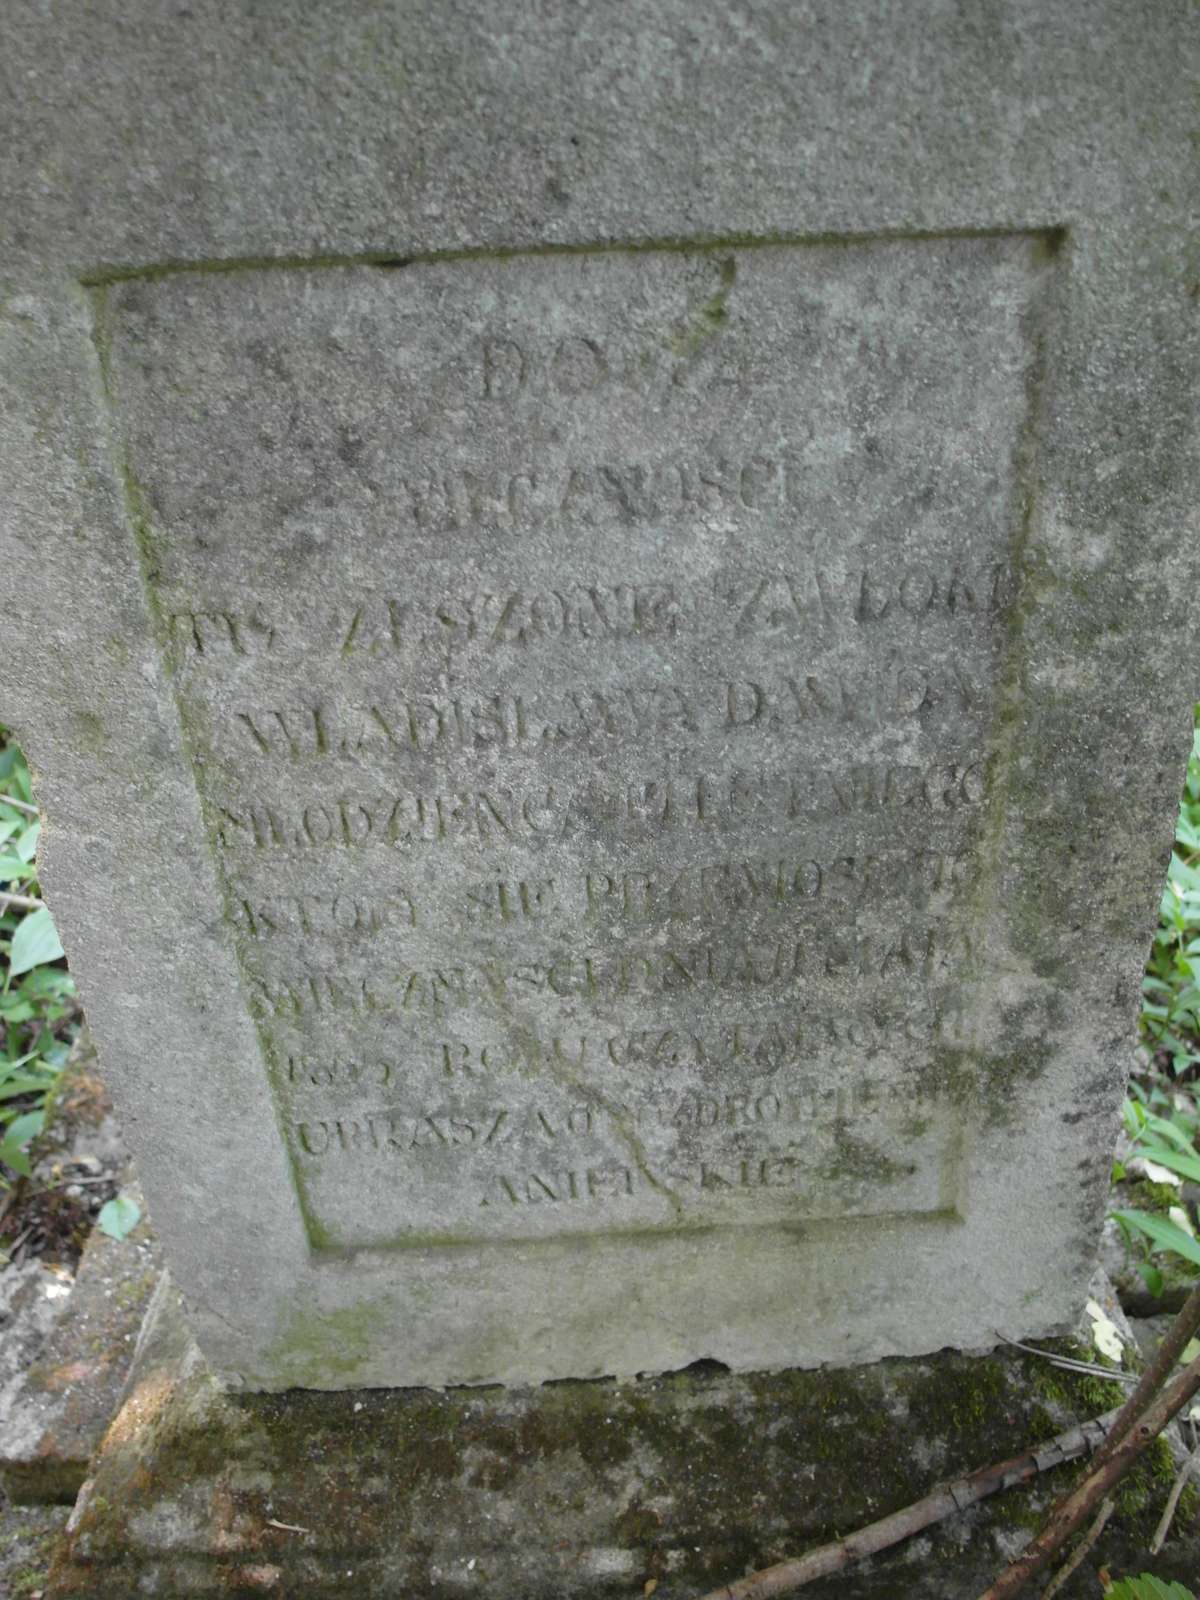 Inscription from the gravestone of Wladyslaw Wlodzieniec. Cemetery in Kokutkowce